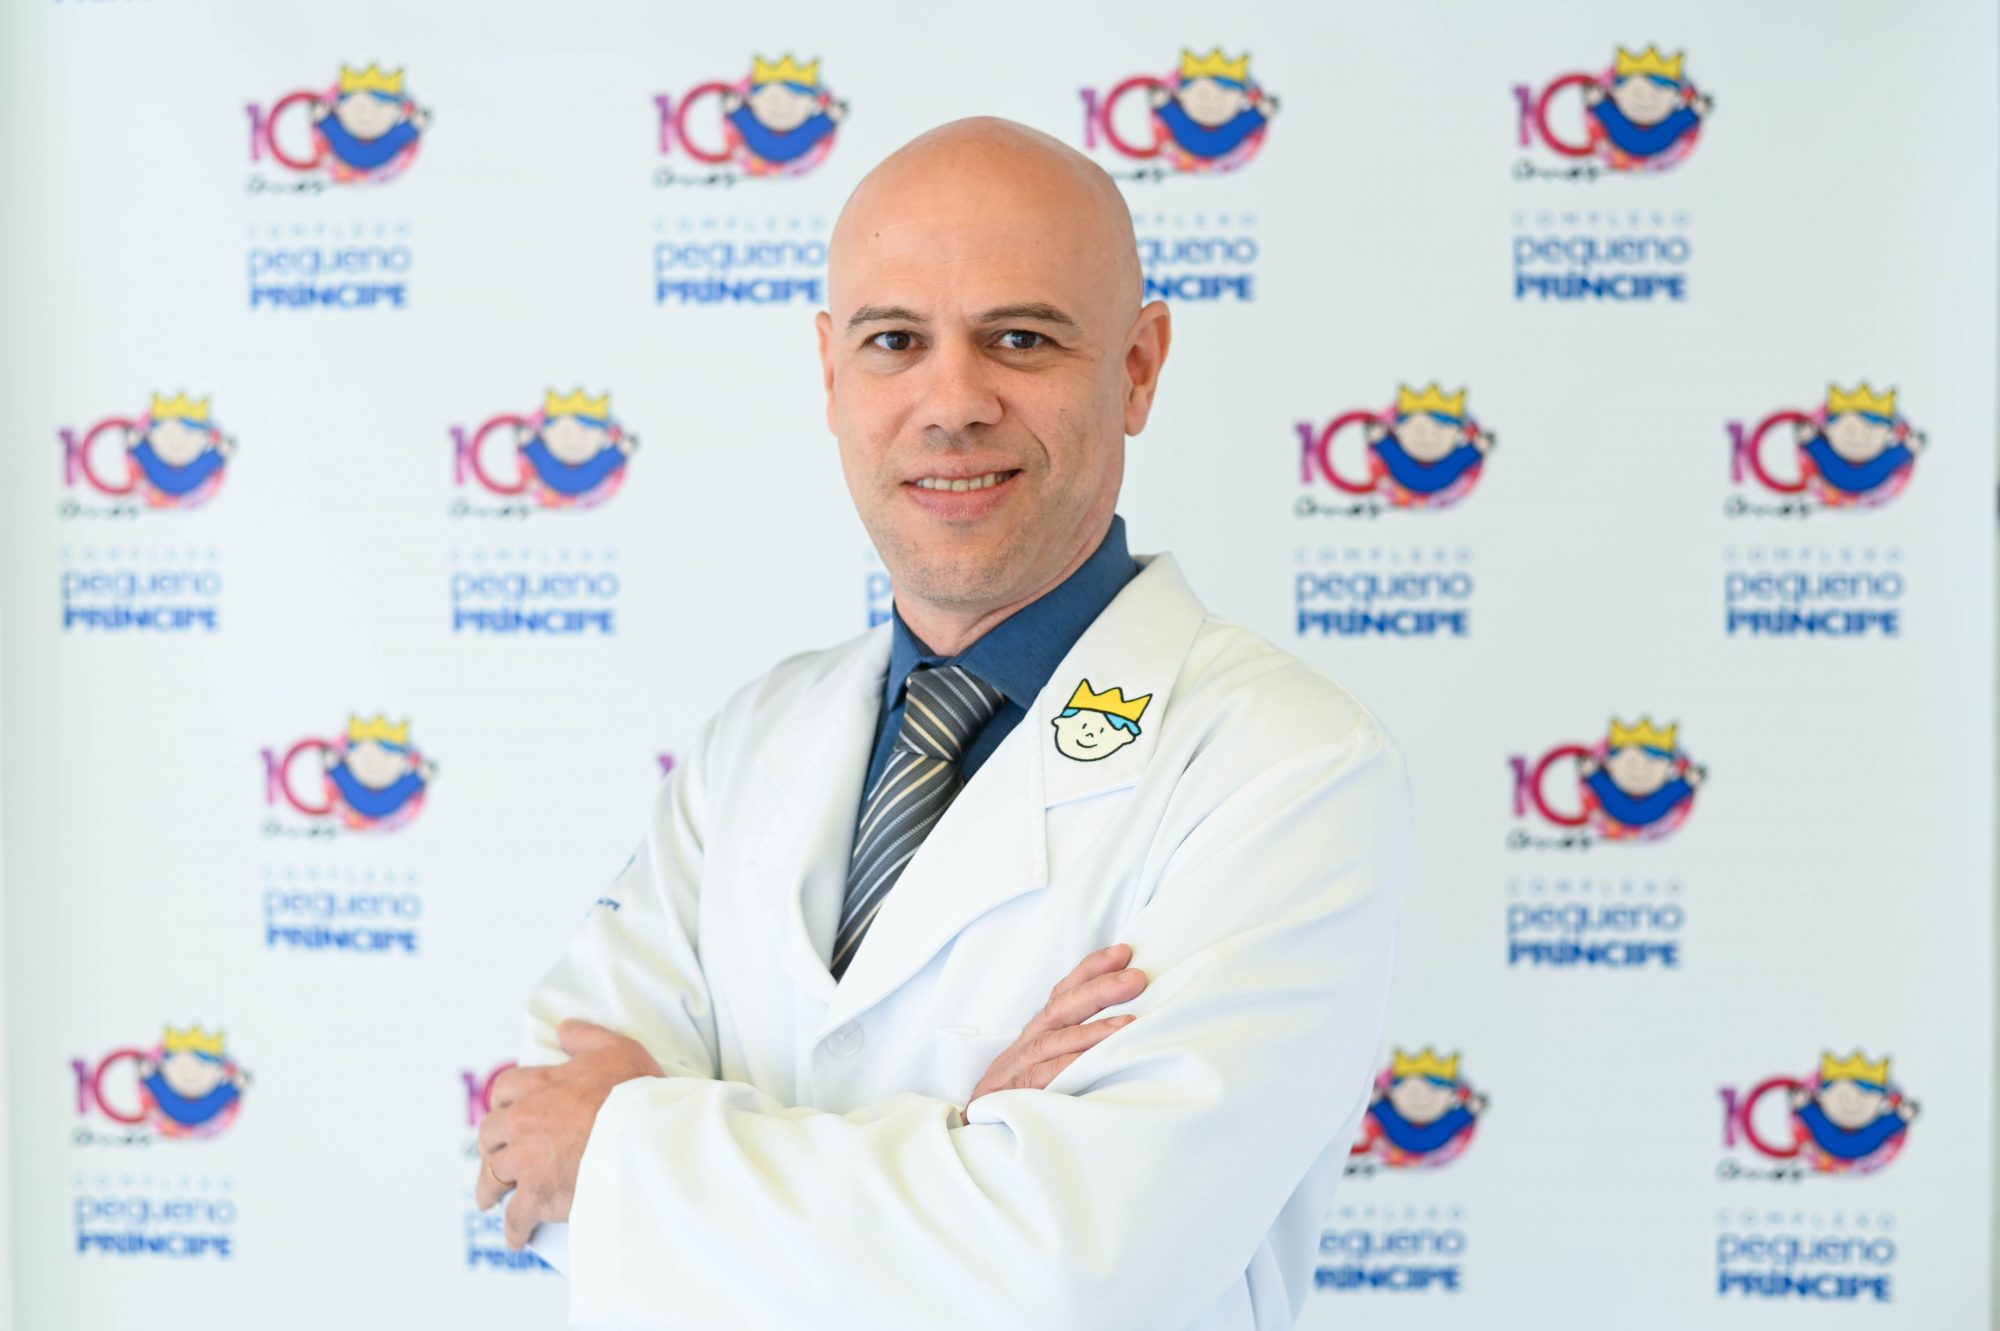 Dr. Fábio de Araújo Motta